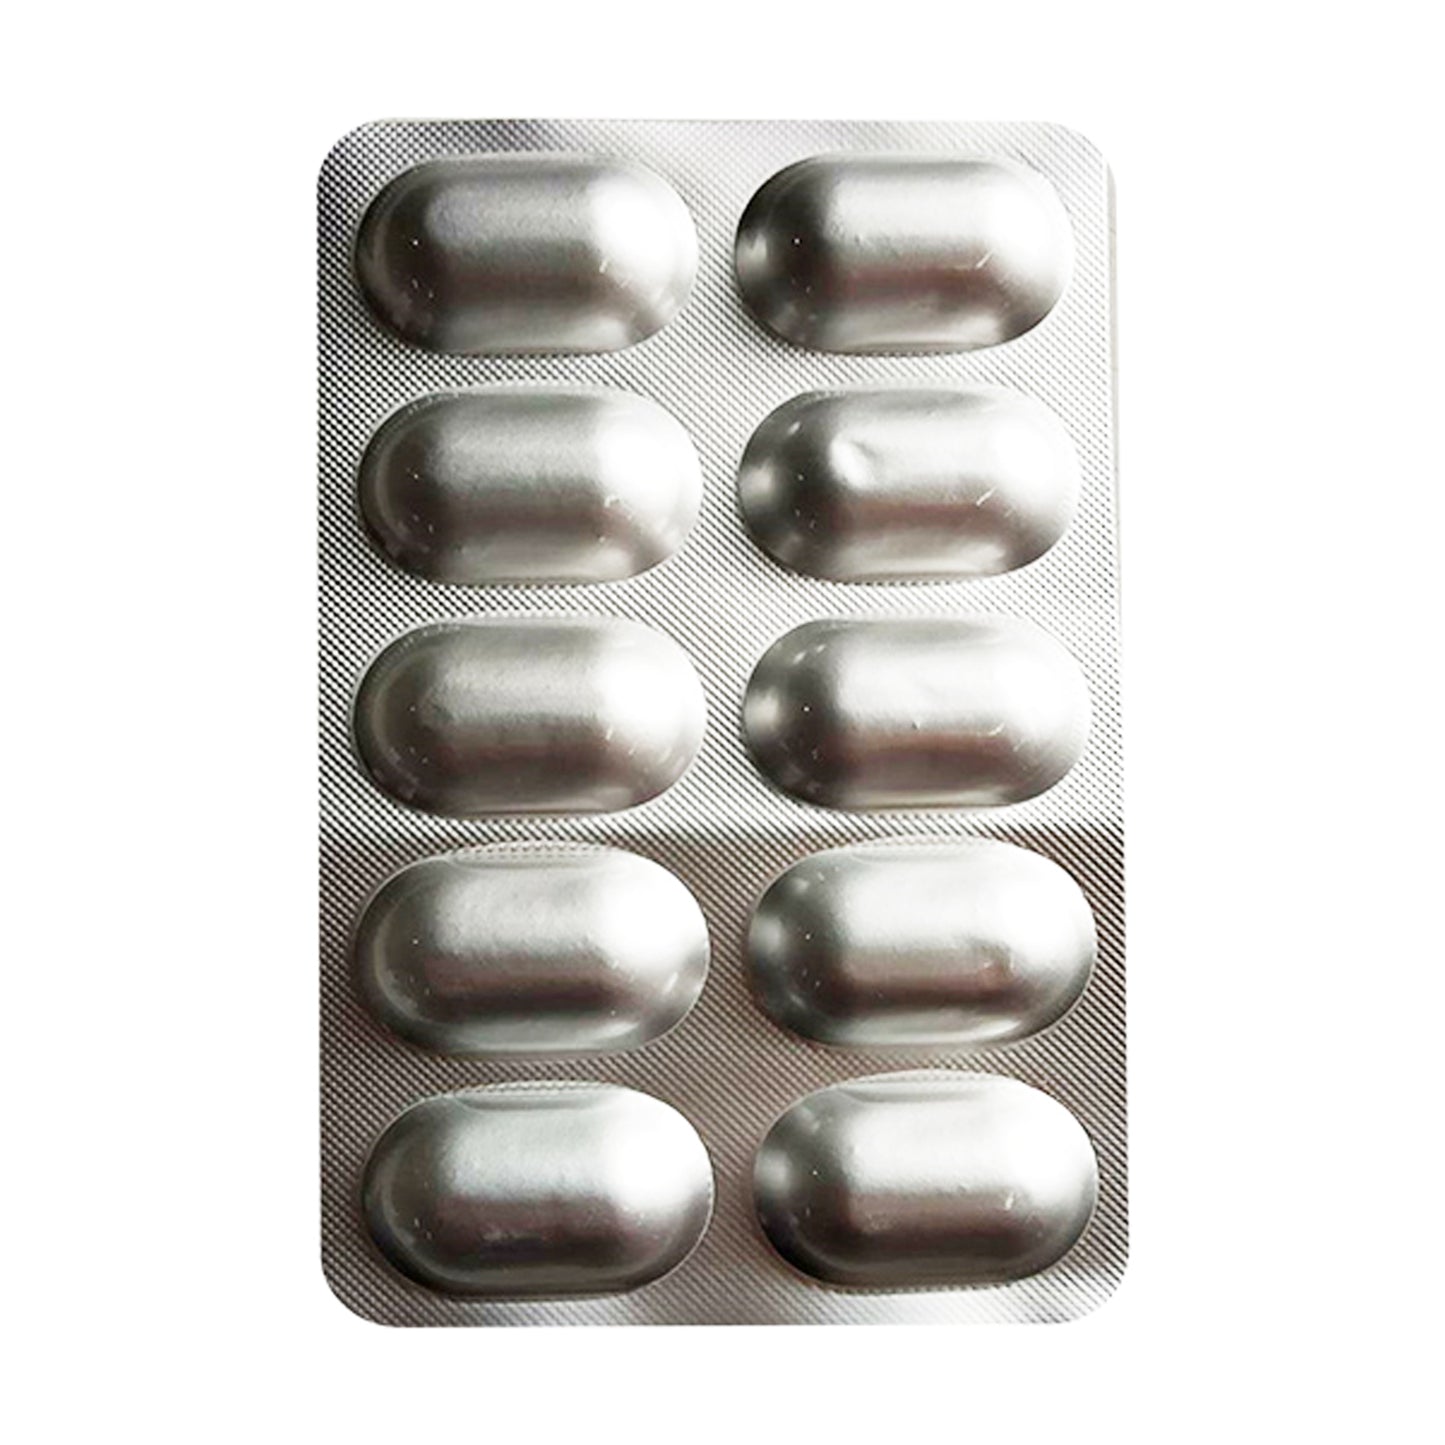 Glutaderm Plus, 10 Tablets